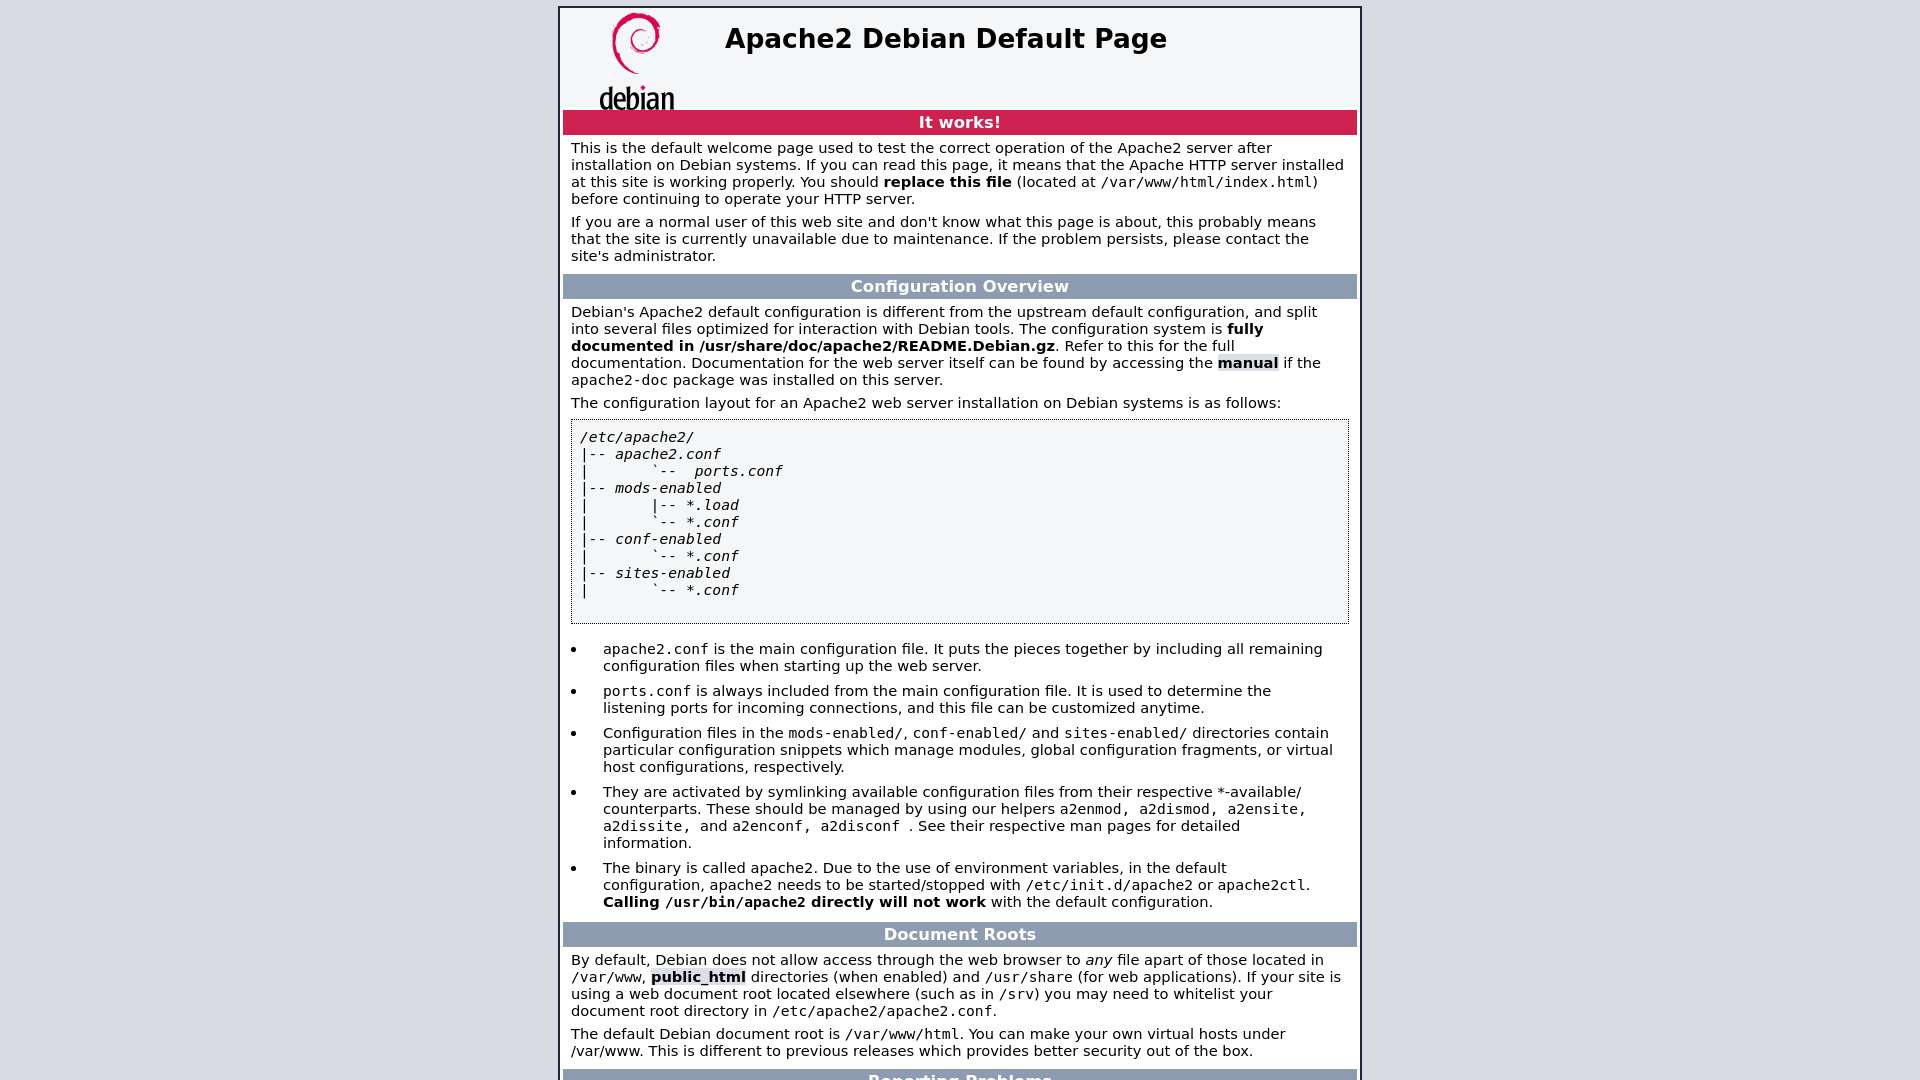 Apache2 Debian Default Page: It works截图时间：2023-05-02